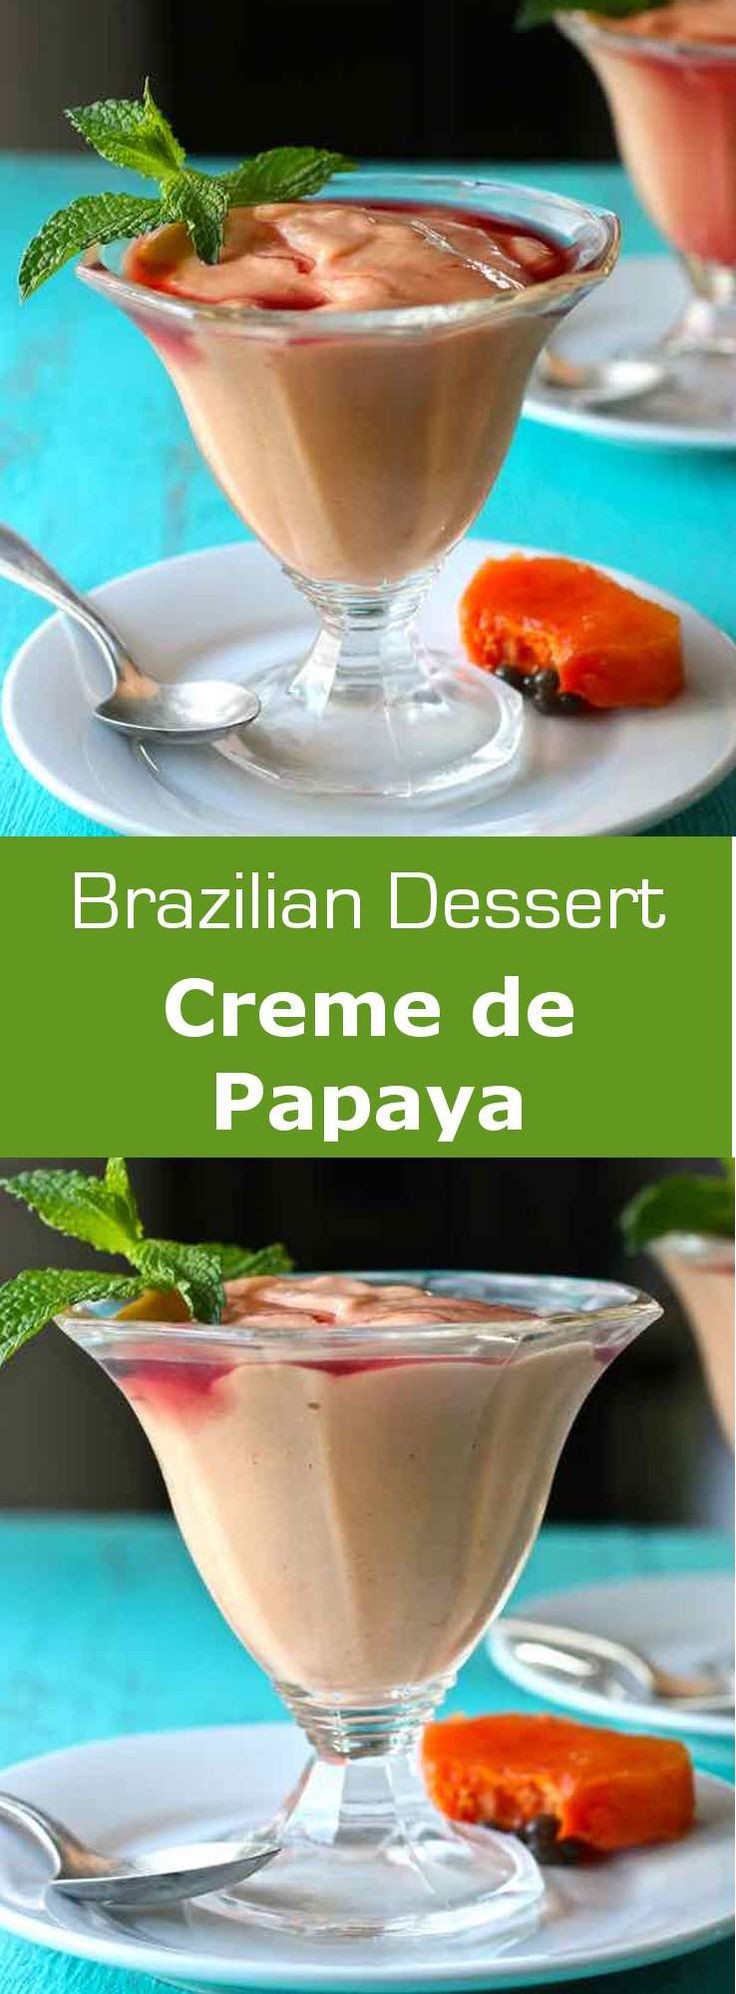 Brazilian Christmas Desserts
 Best 25 Brazilian dessert ideas on Pinterest